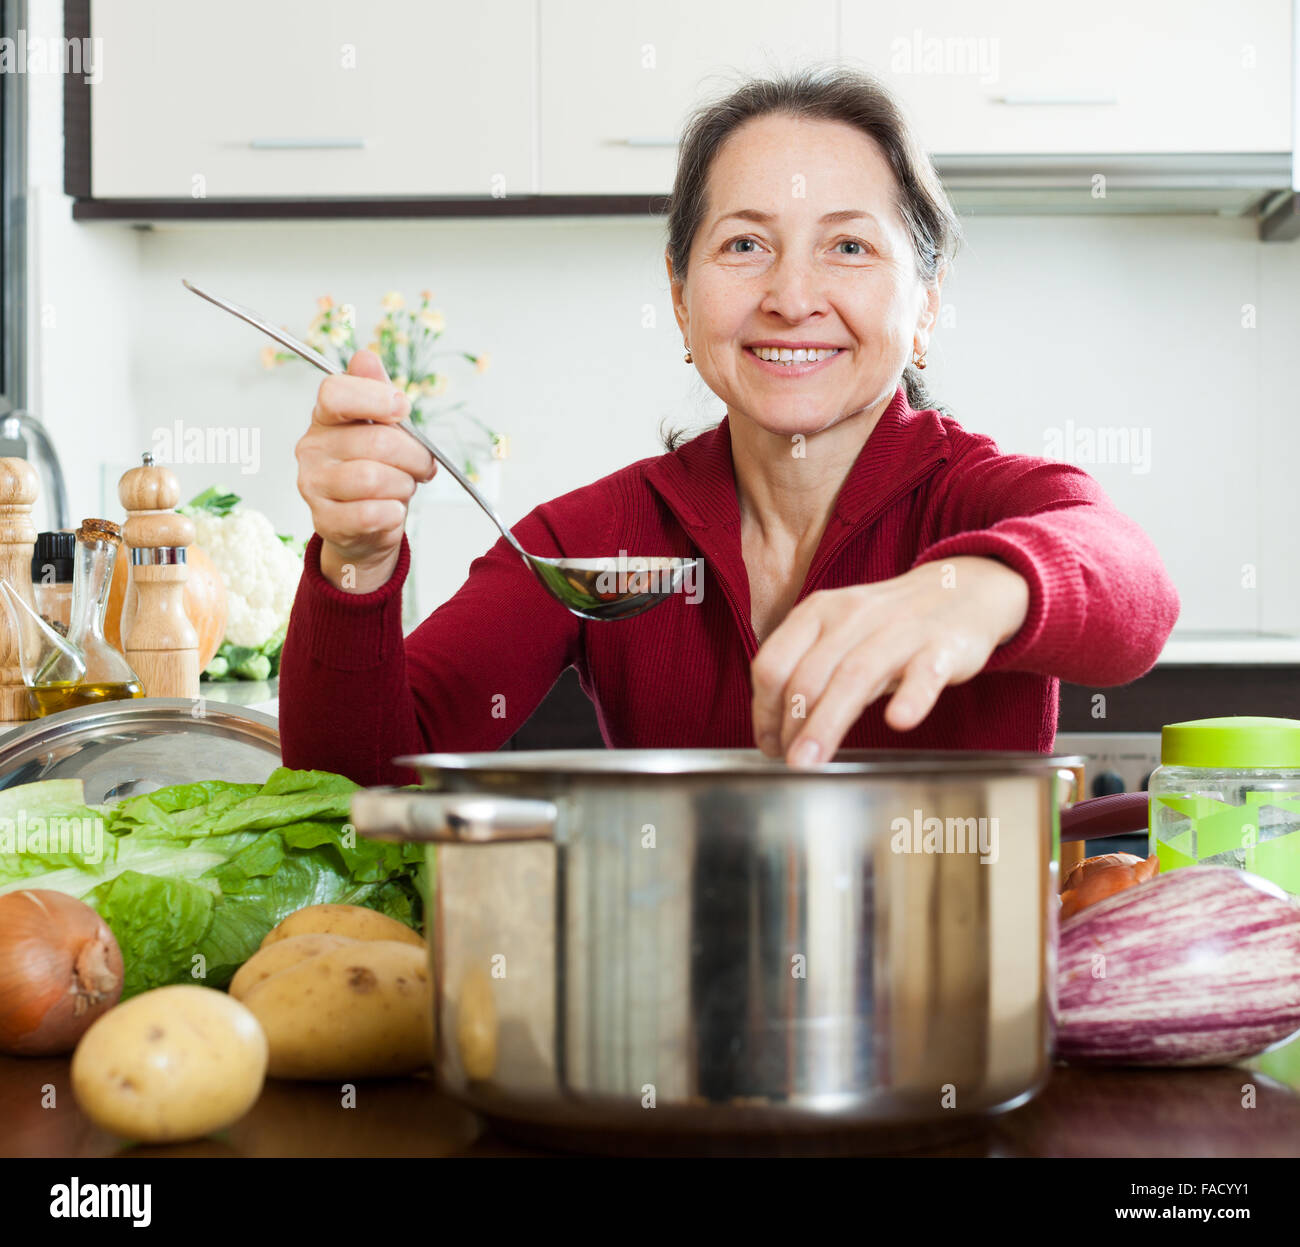 Питание после 45. Питание после 40 лет для женщин. Женщина 50 лет на кухне. Женщина в возрасте на кухне. Питание после 50 лет для женщин.